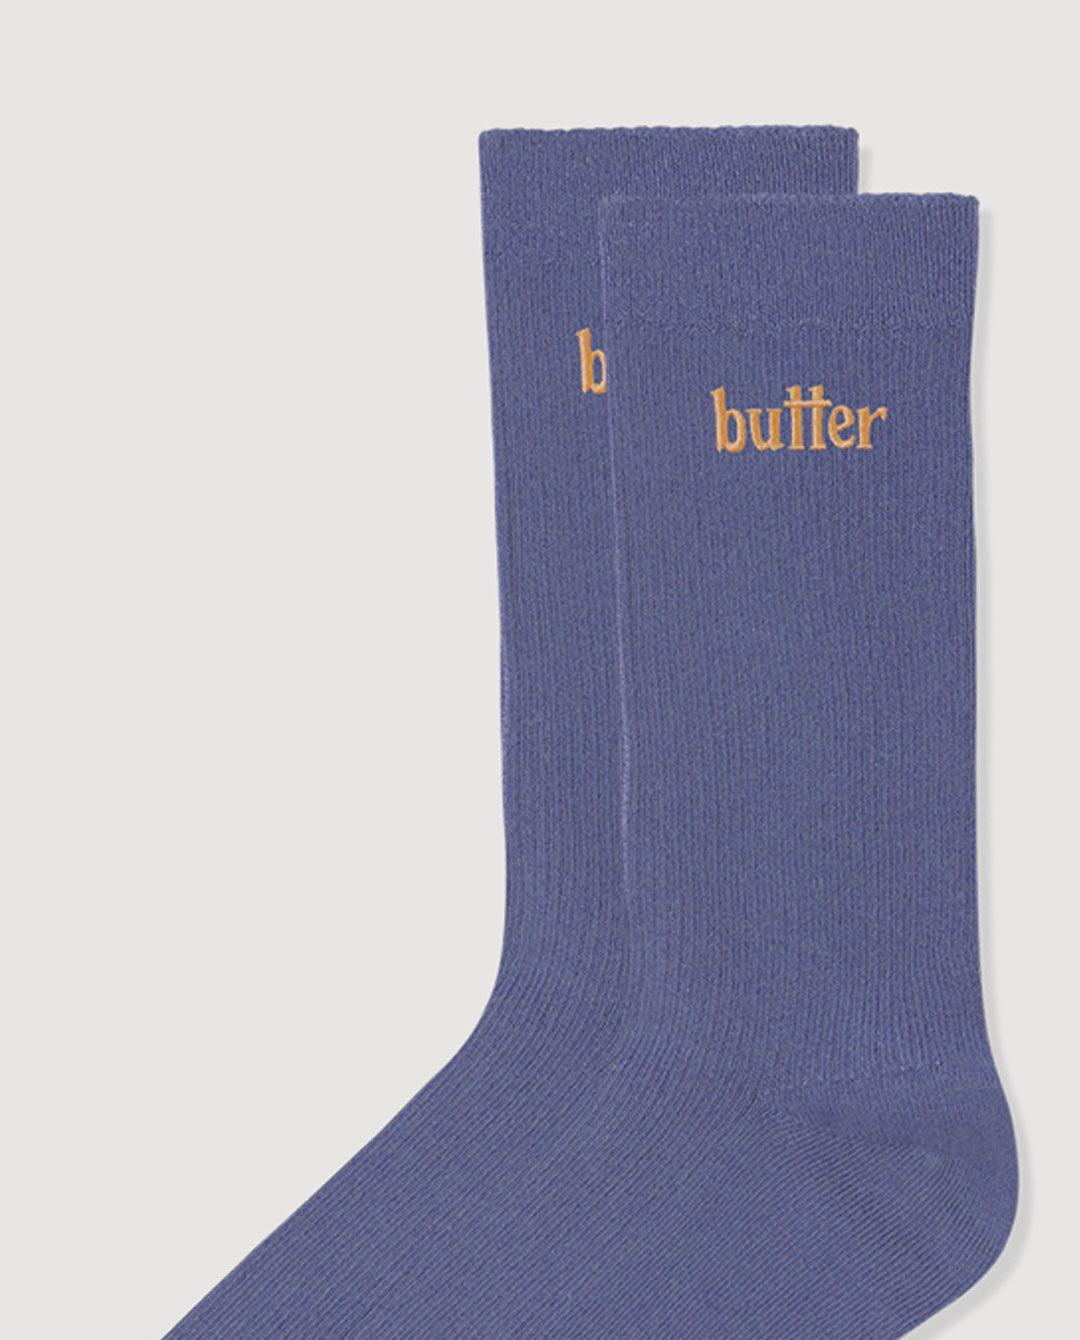 Butter Goods - Basic Socks - Slate